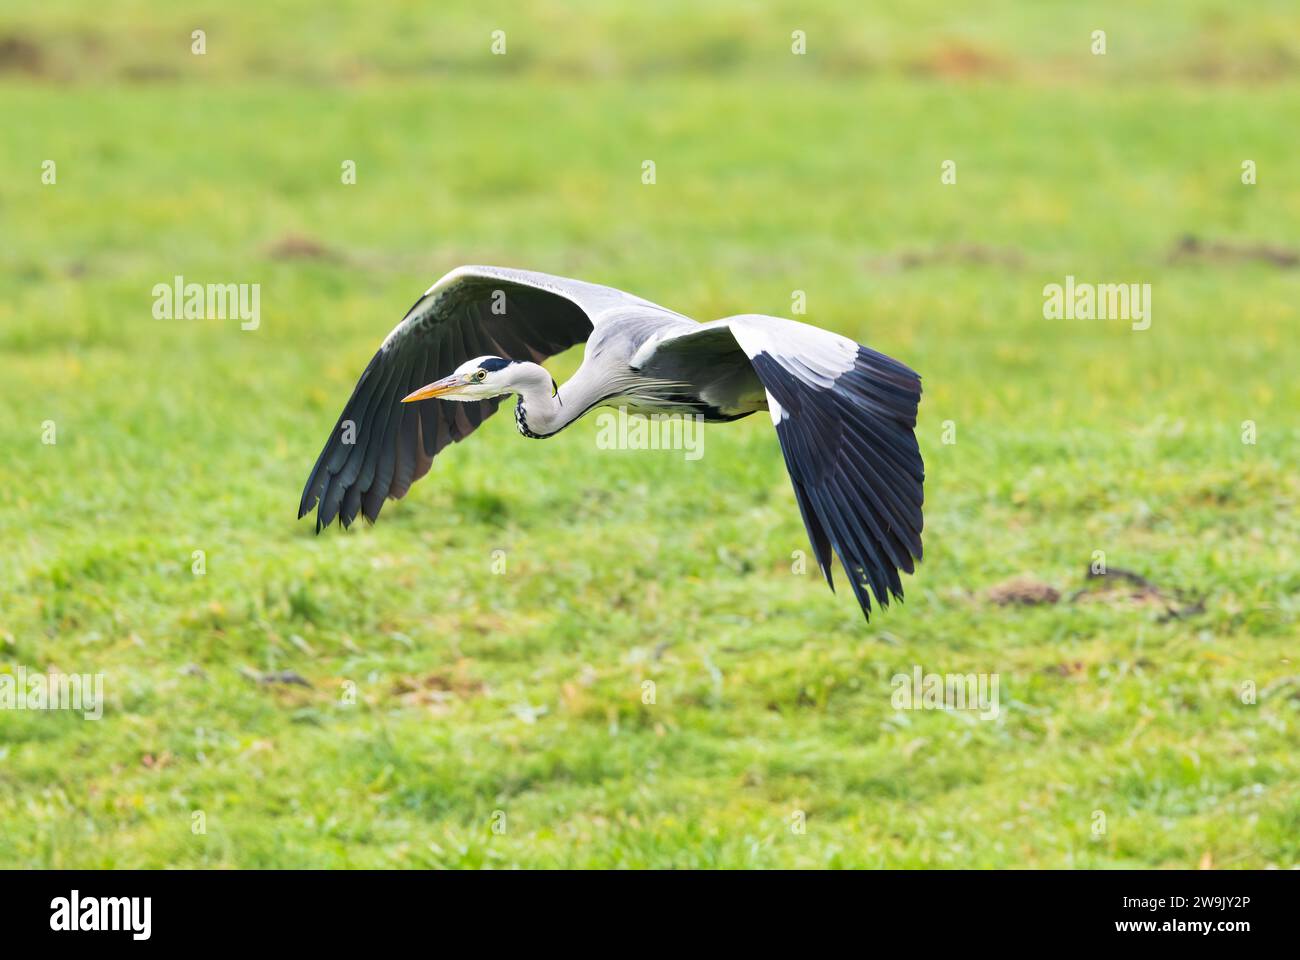 Ritratto di un Heron grigio osservante a volo basso, Ardea cinerea, su un prato verde e tenendo gli occhi in contatto mentre passa Foto Stock